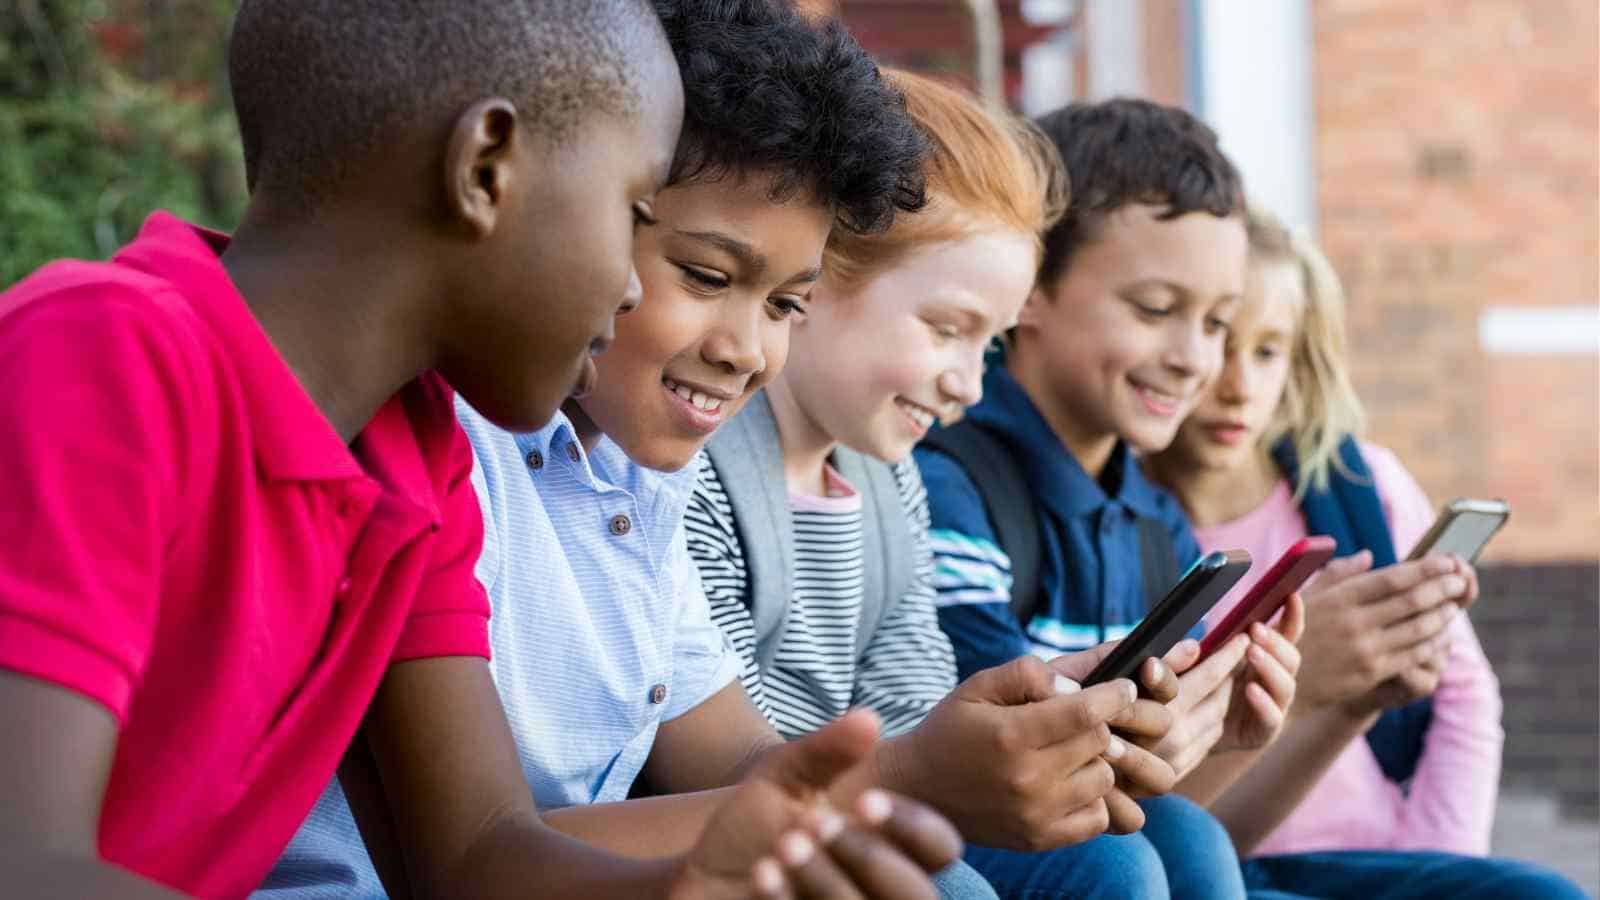 La dipendenza da smartphone è un problema anche per i minori, ecco come l'UK ha deciso di intervenire